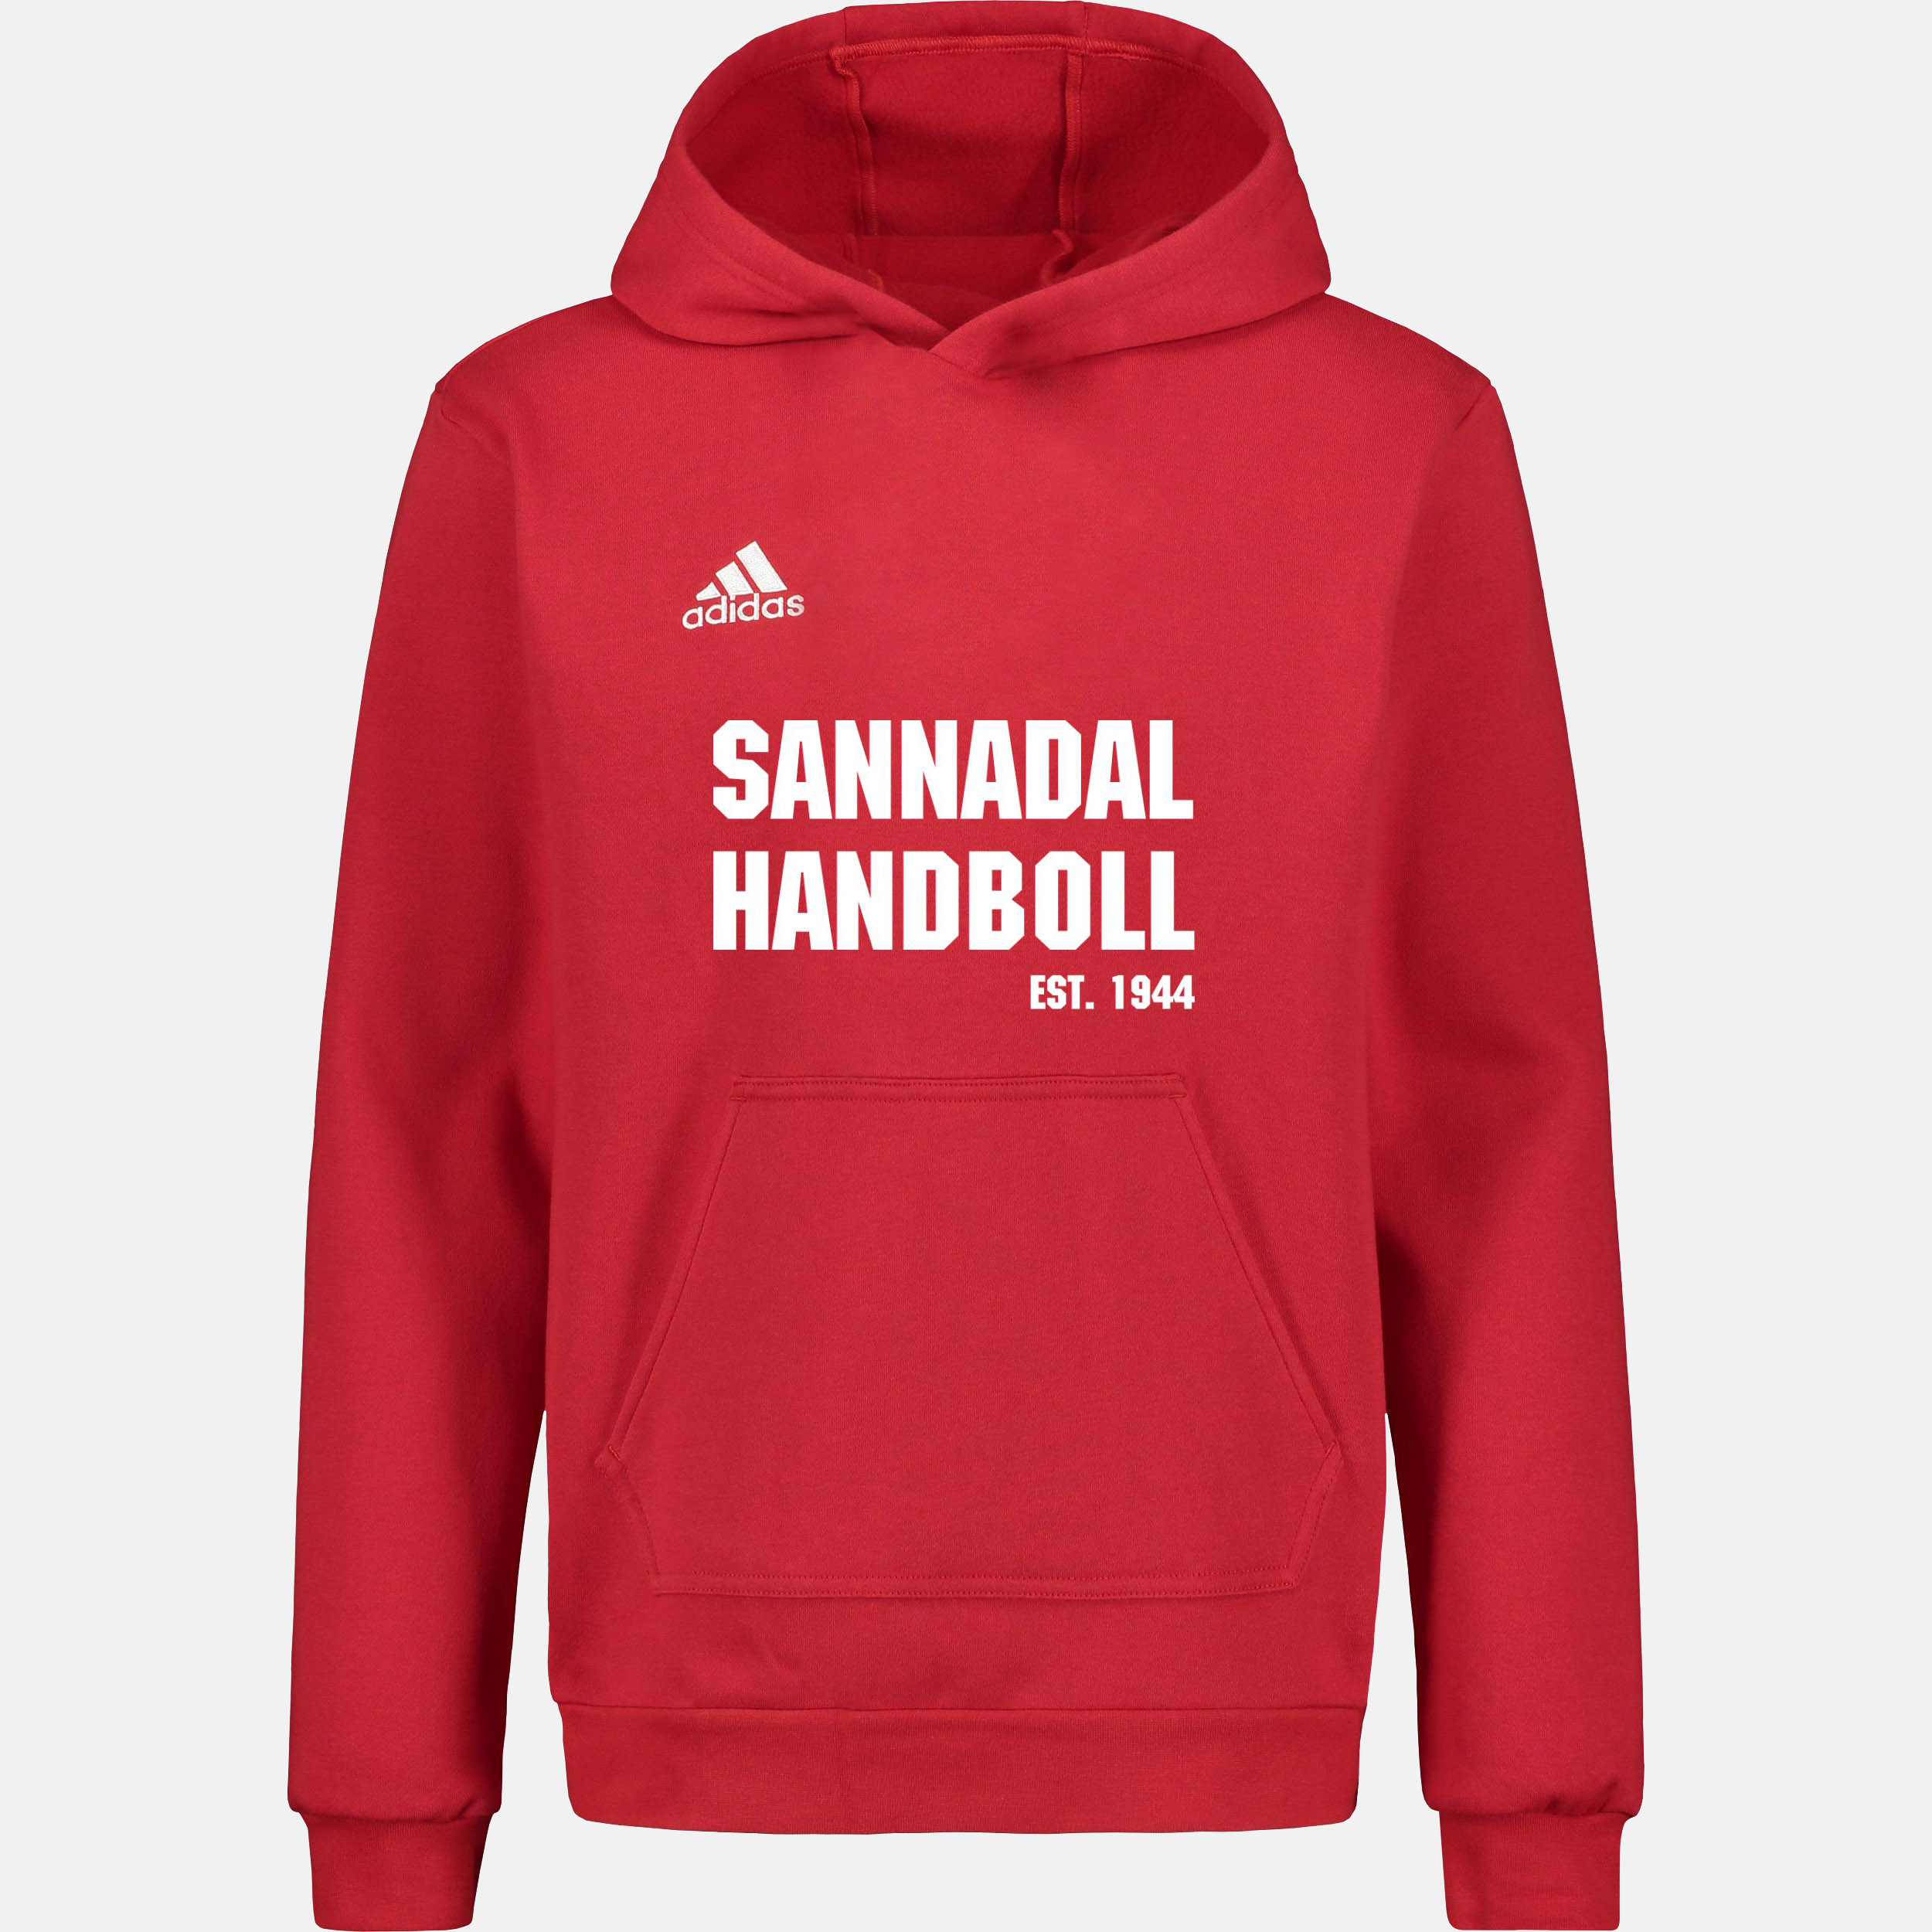 Sannadalhoodie (junior)